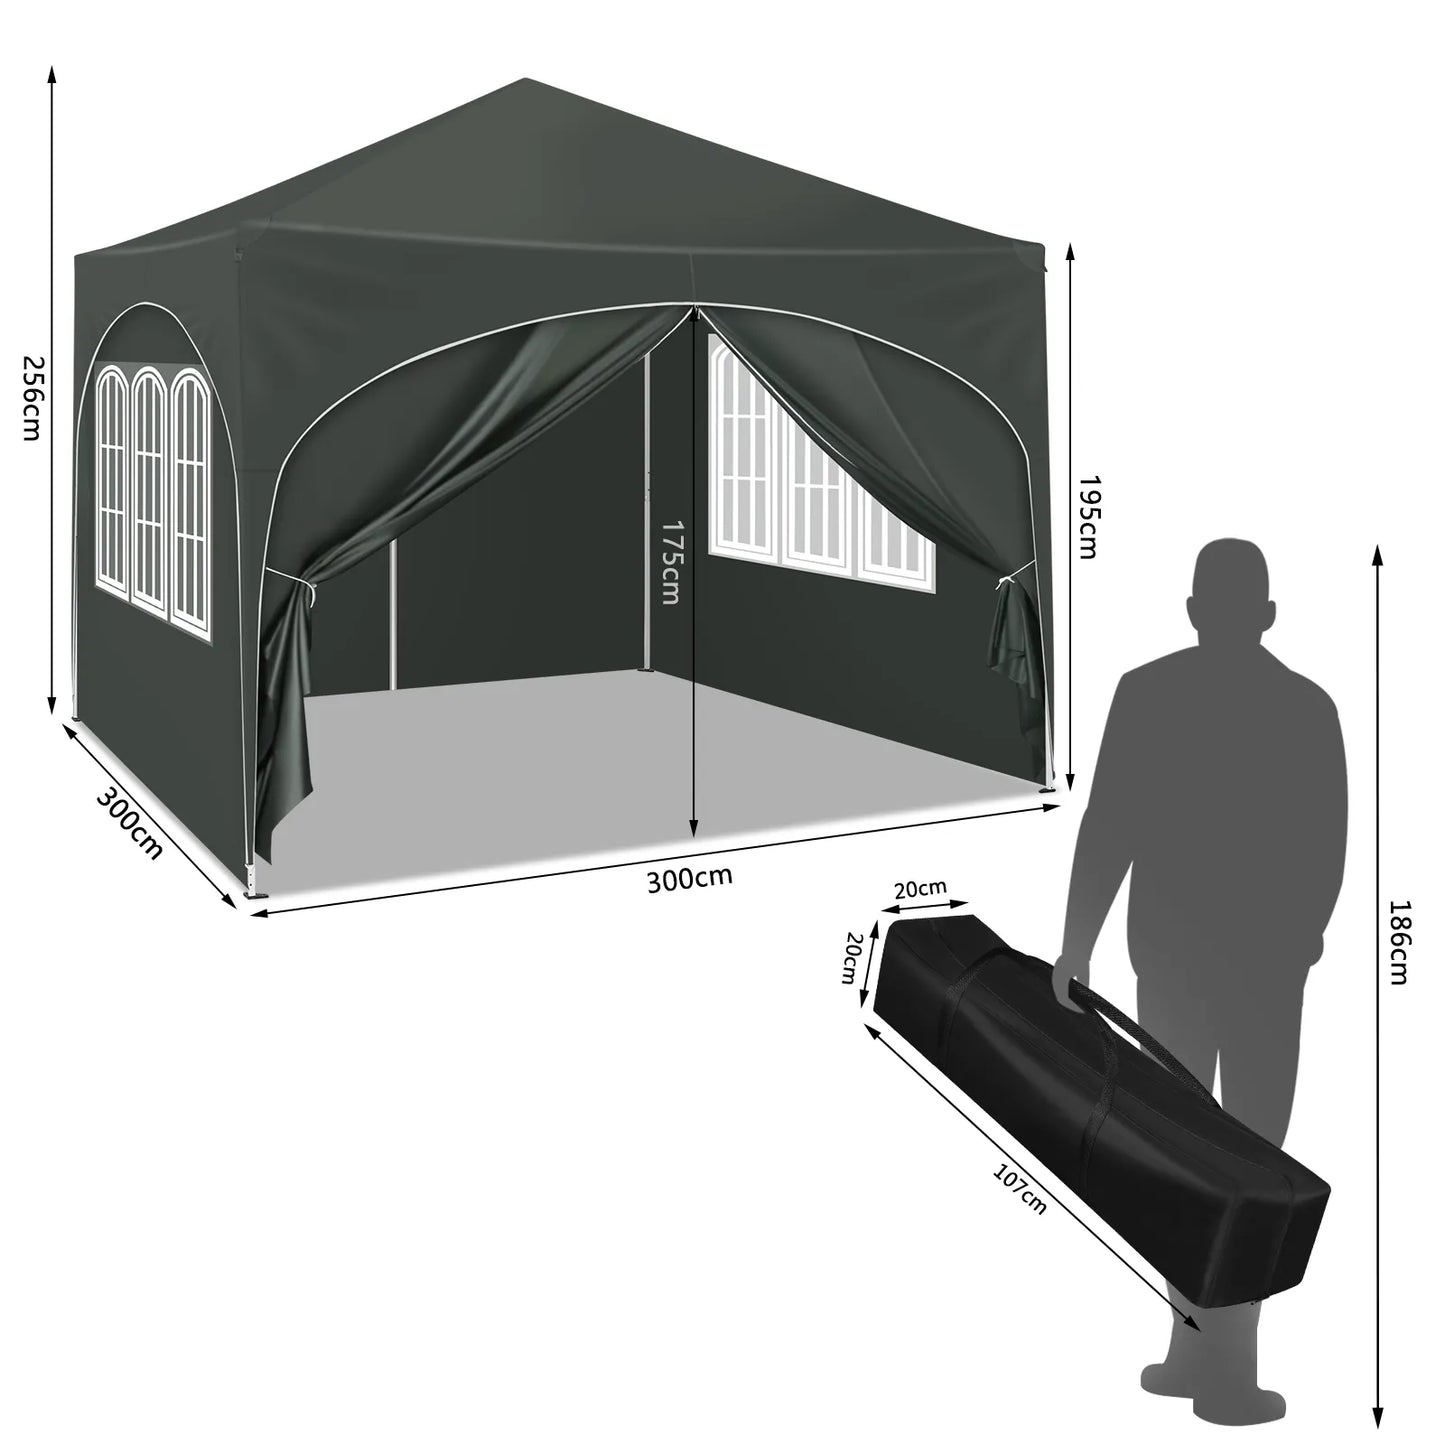 Faltbarer Pavillon mit 4 Seitenwänden 3x3m - Partyzelt mit Wasserabweisendem UV-Schutz, Höhenverstellbar für Garten, Camping, Picknick - Unique Outlet